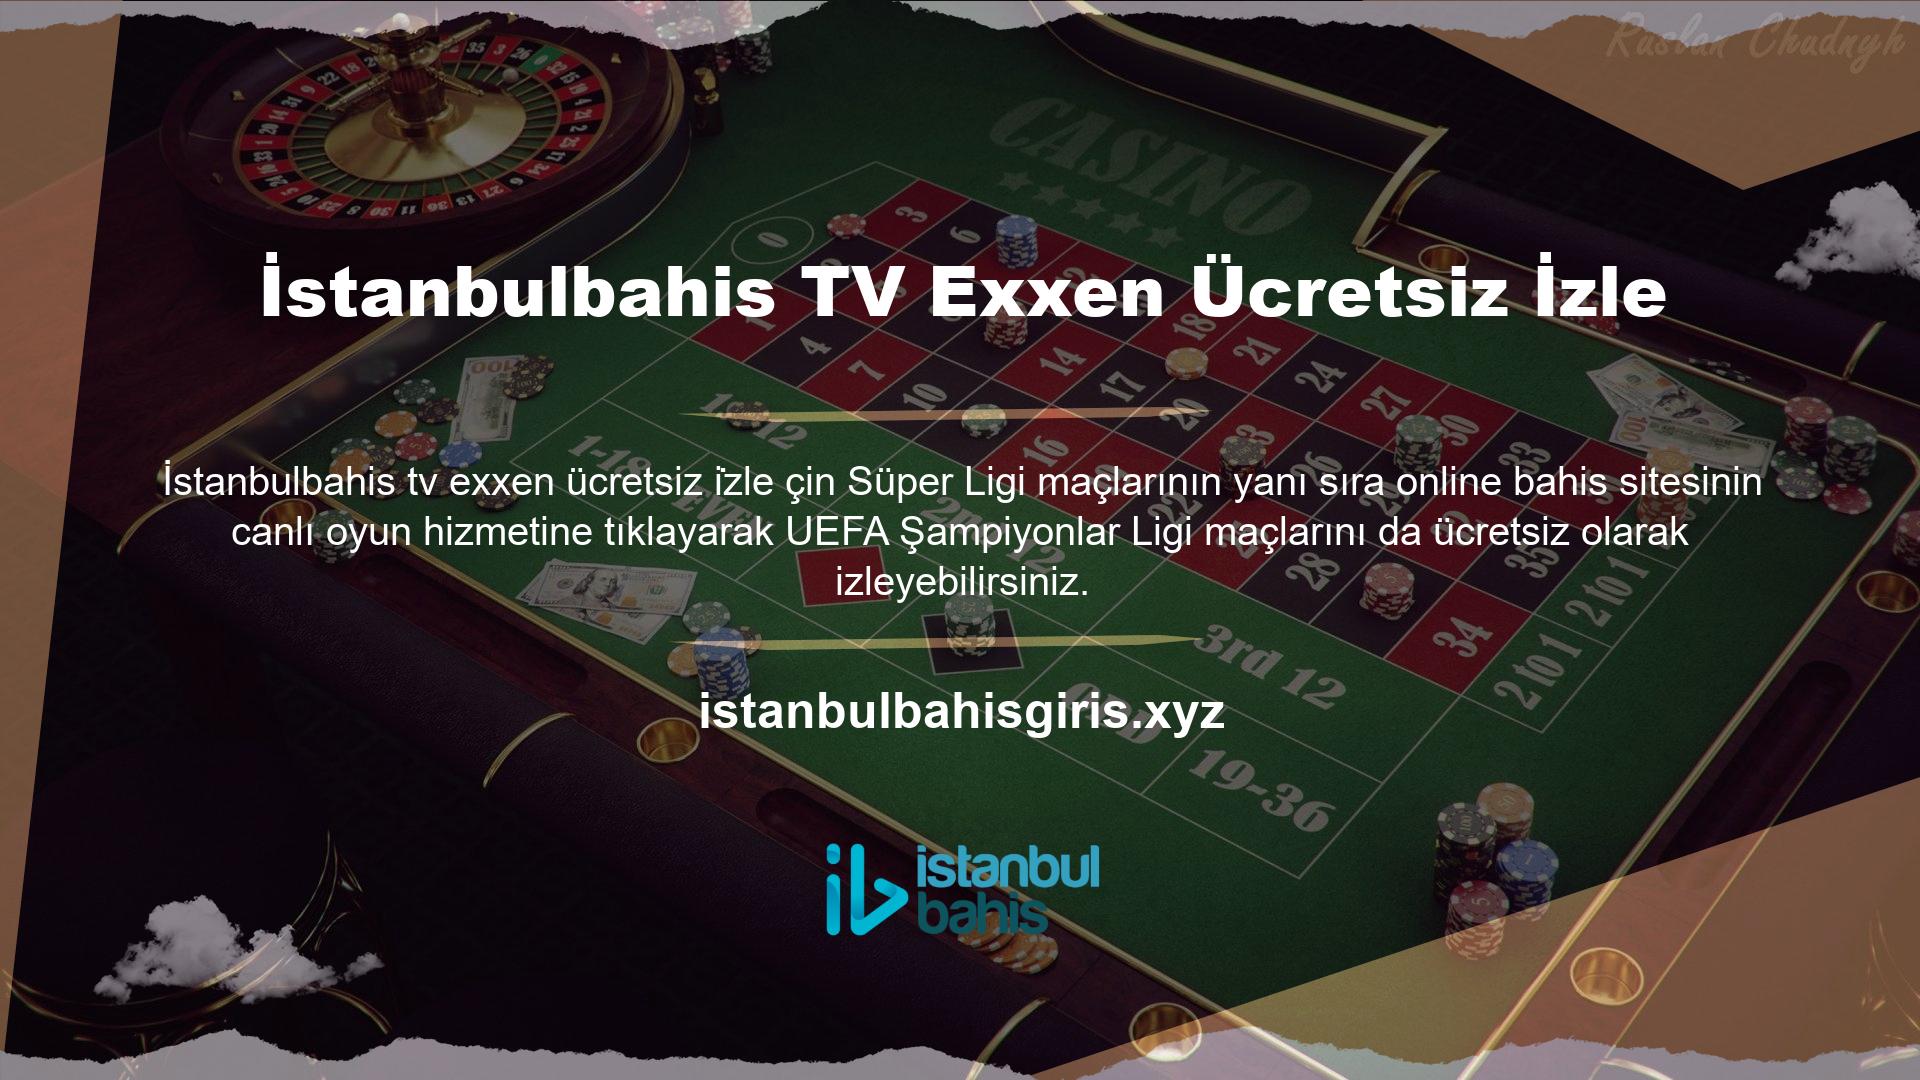 Exxen Channel'da UEFA Şampiyonlar Ligi maçlarını izlemek için üye olmanız gerekmektedir